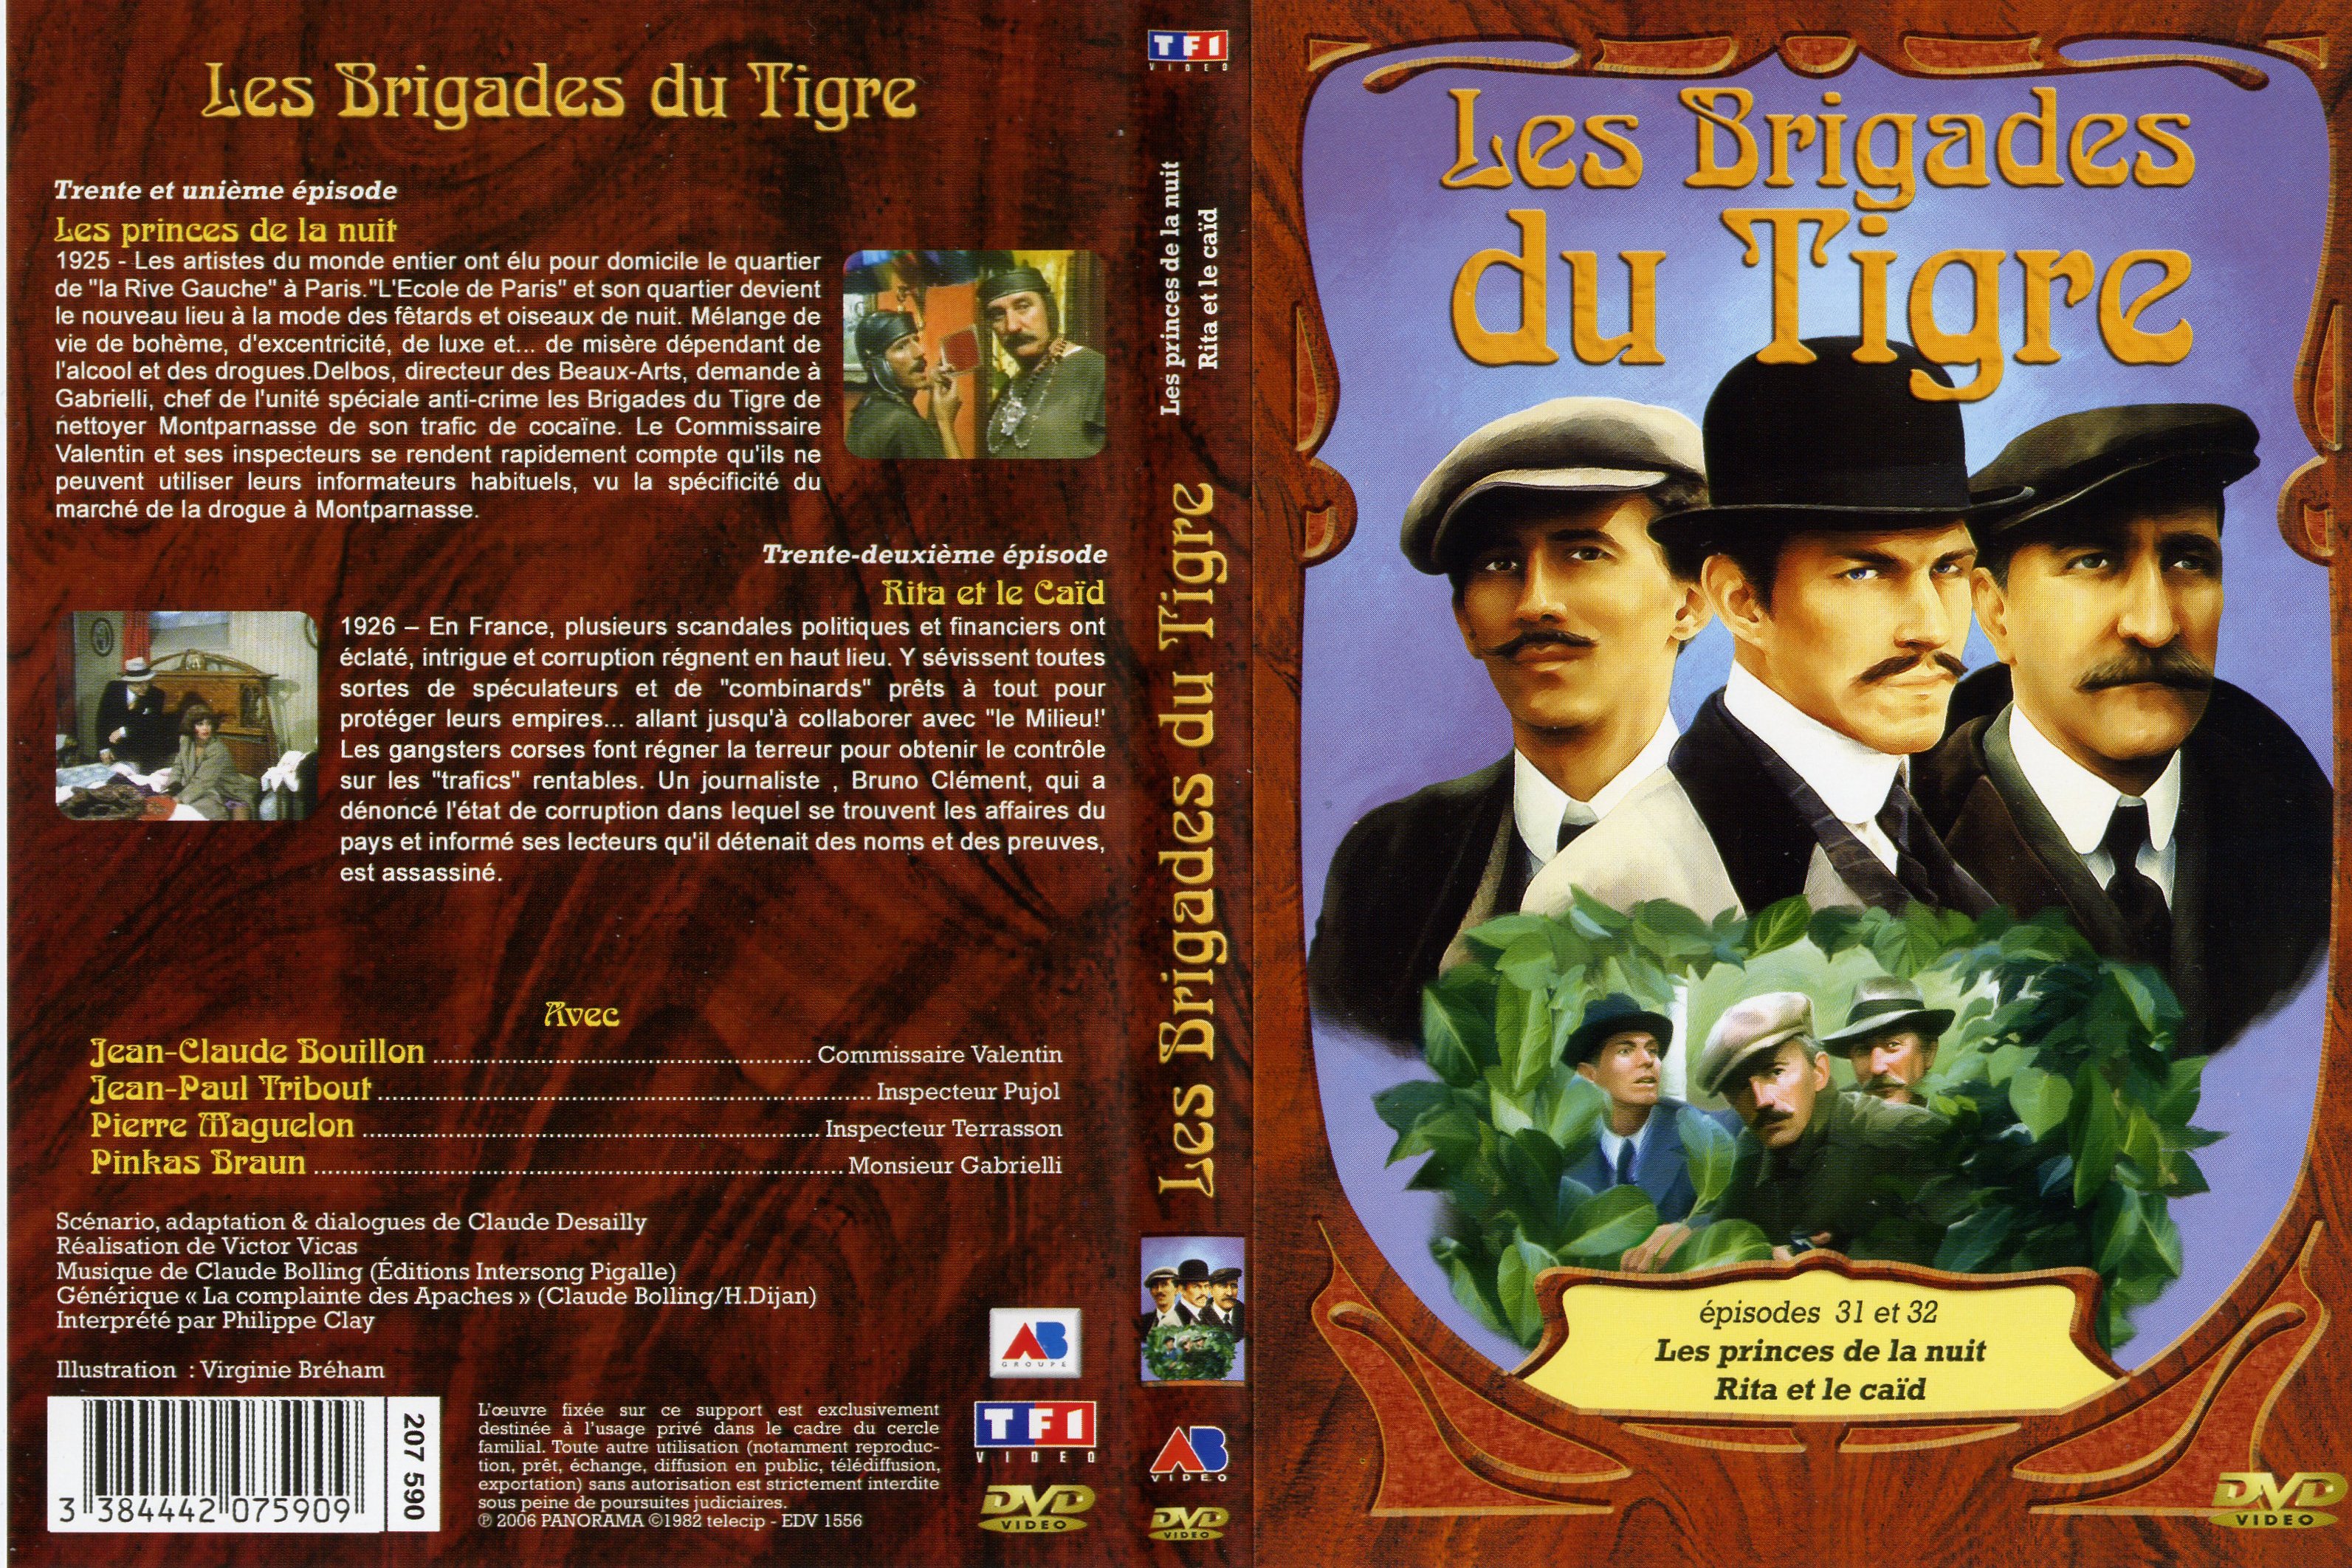 Jaquette DVD Les brigades du tigre vol 16